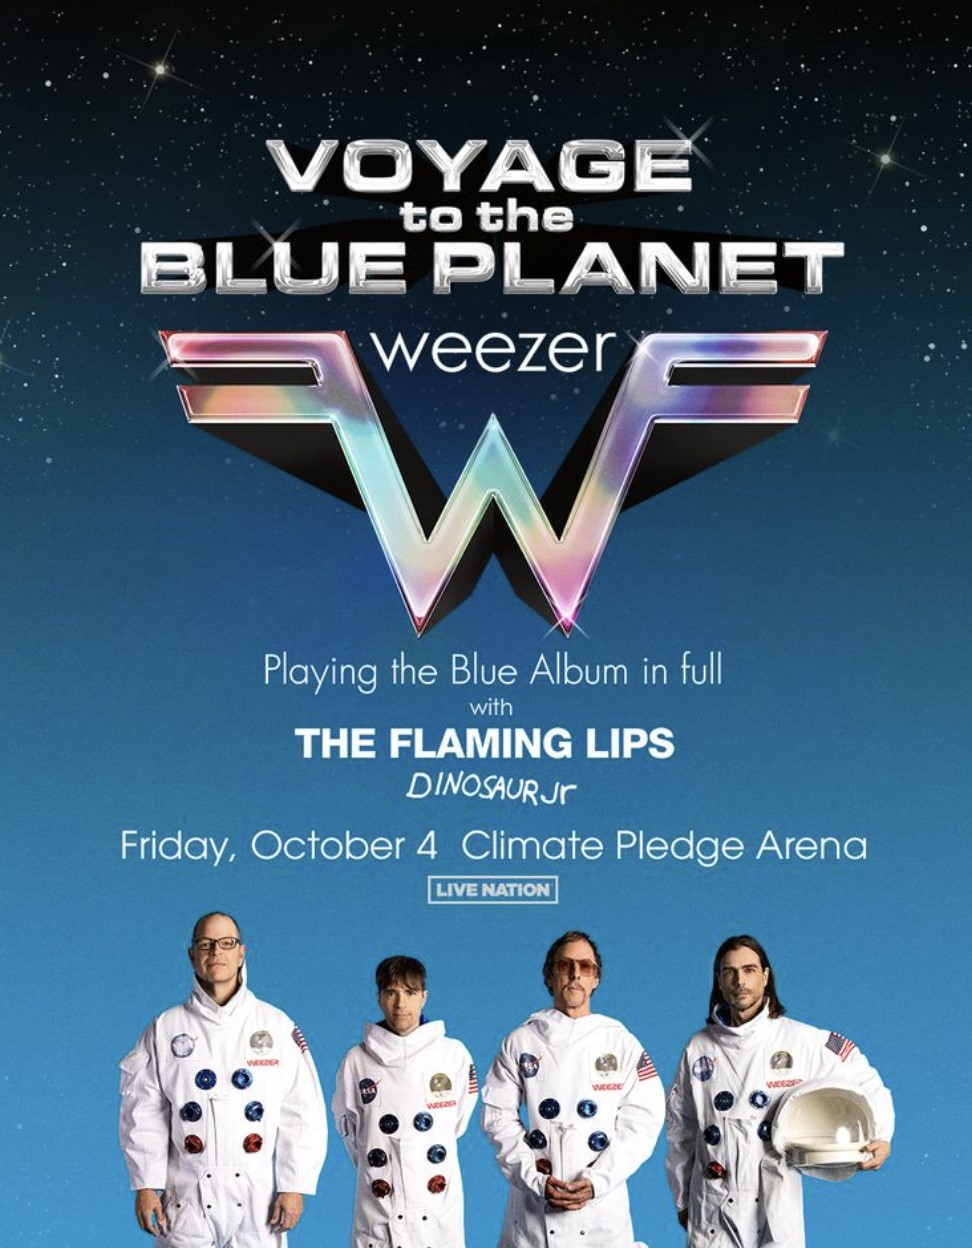 Weezer's 90s nostalgia 'Blue Voyage' tour brings Flaming Lips, Dinosaur